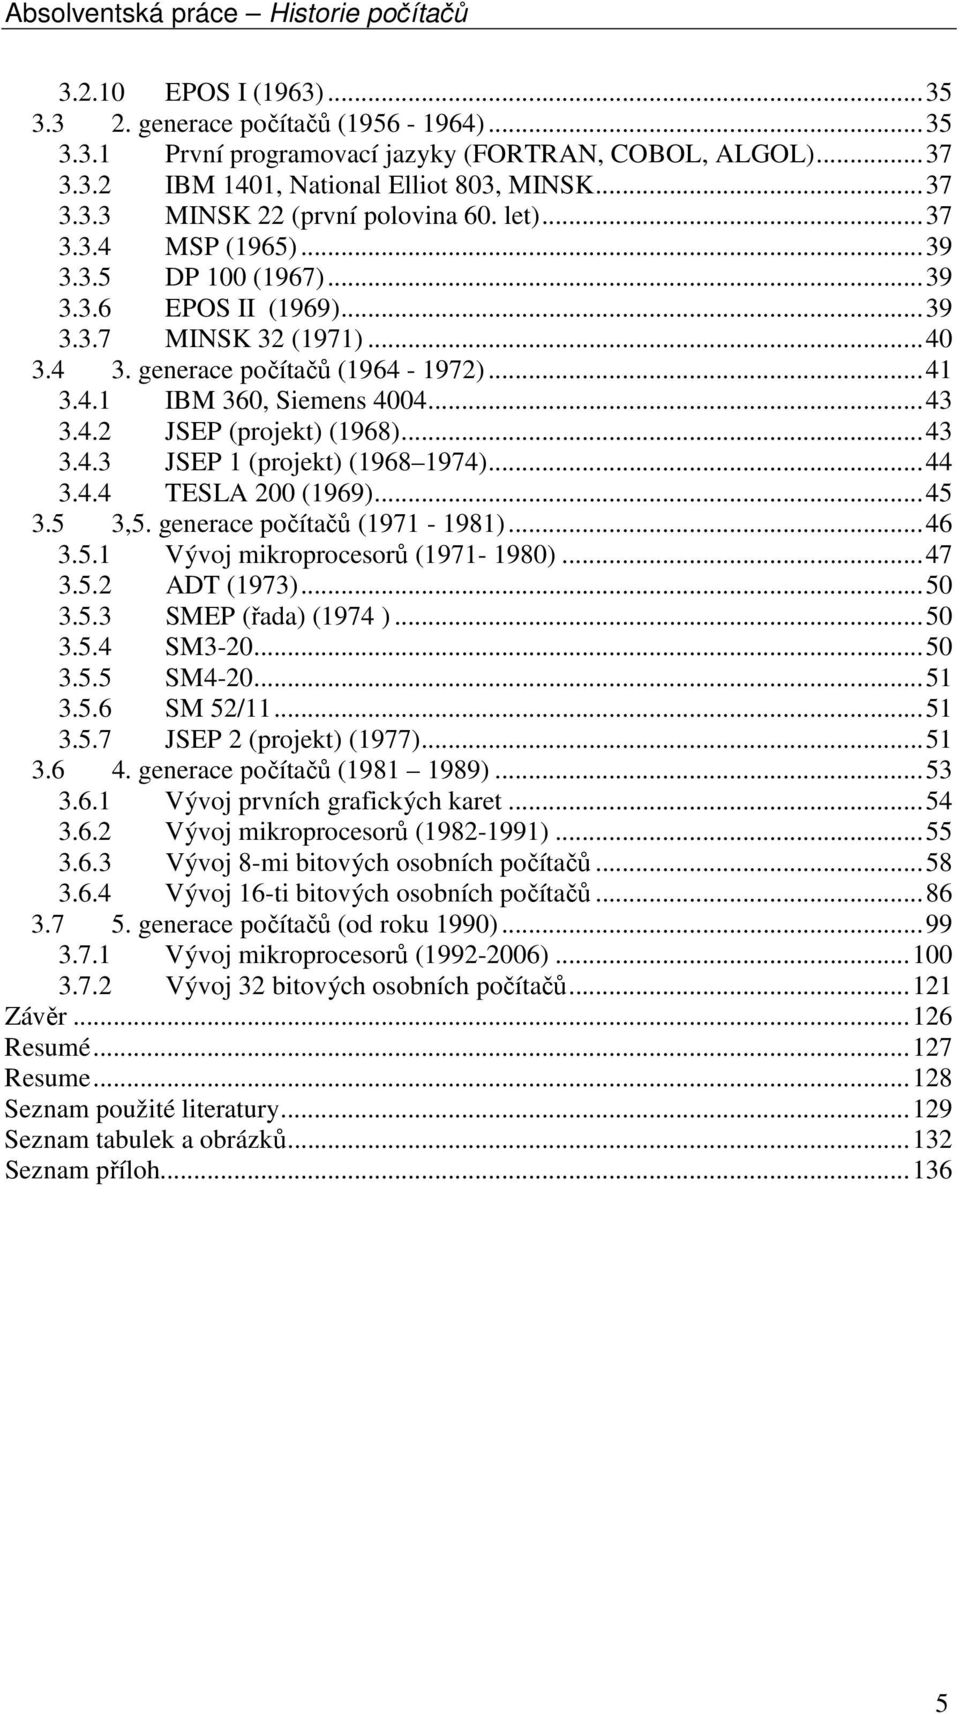 ..43 3.4.3 JSEP 1 (projekt) (1968 1974)...44 3.4.4 TESLA 200 (1969)...45 3.5 3,5. generace počítačů (1971-1981)...46 3.5.1 Vývoj mikroprocesorů (1971-1980)...47 3.5.2 ADT (1973)...50 3.5.3 SMEP (řada) (1974 ).